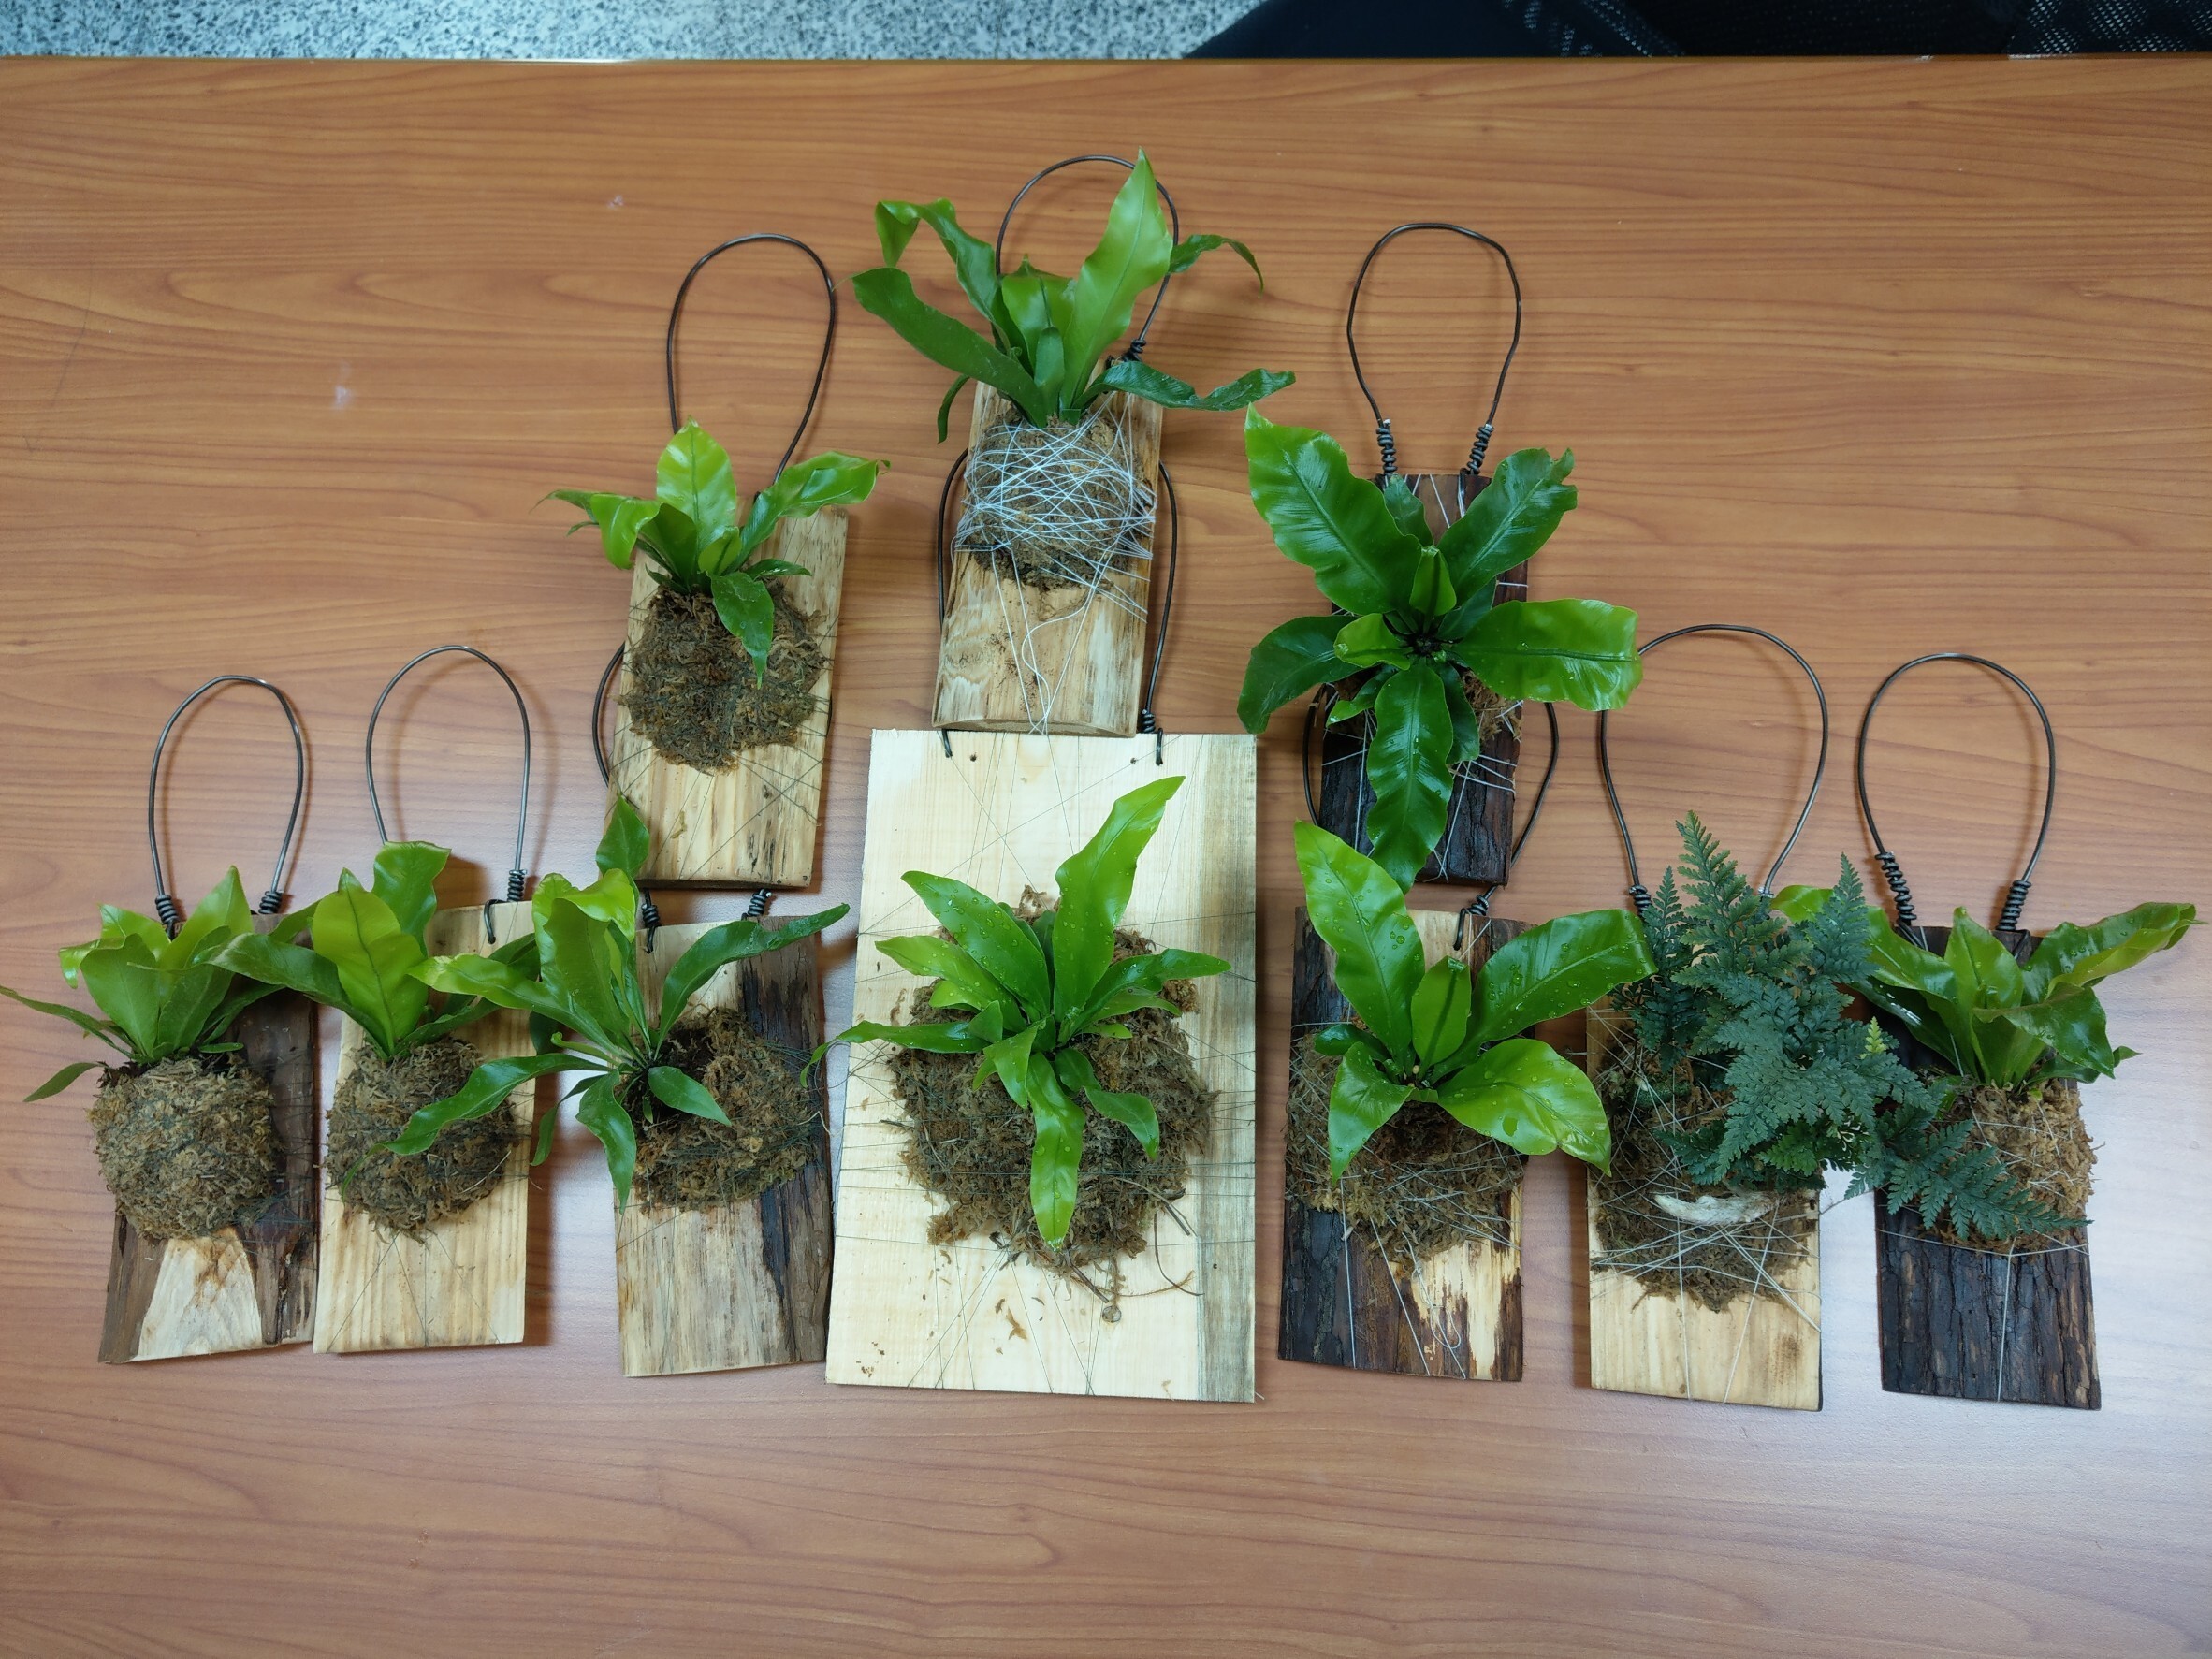 休閒園藝社開發的產品之一-蕨類植物上板